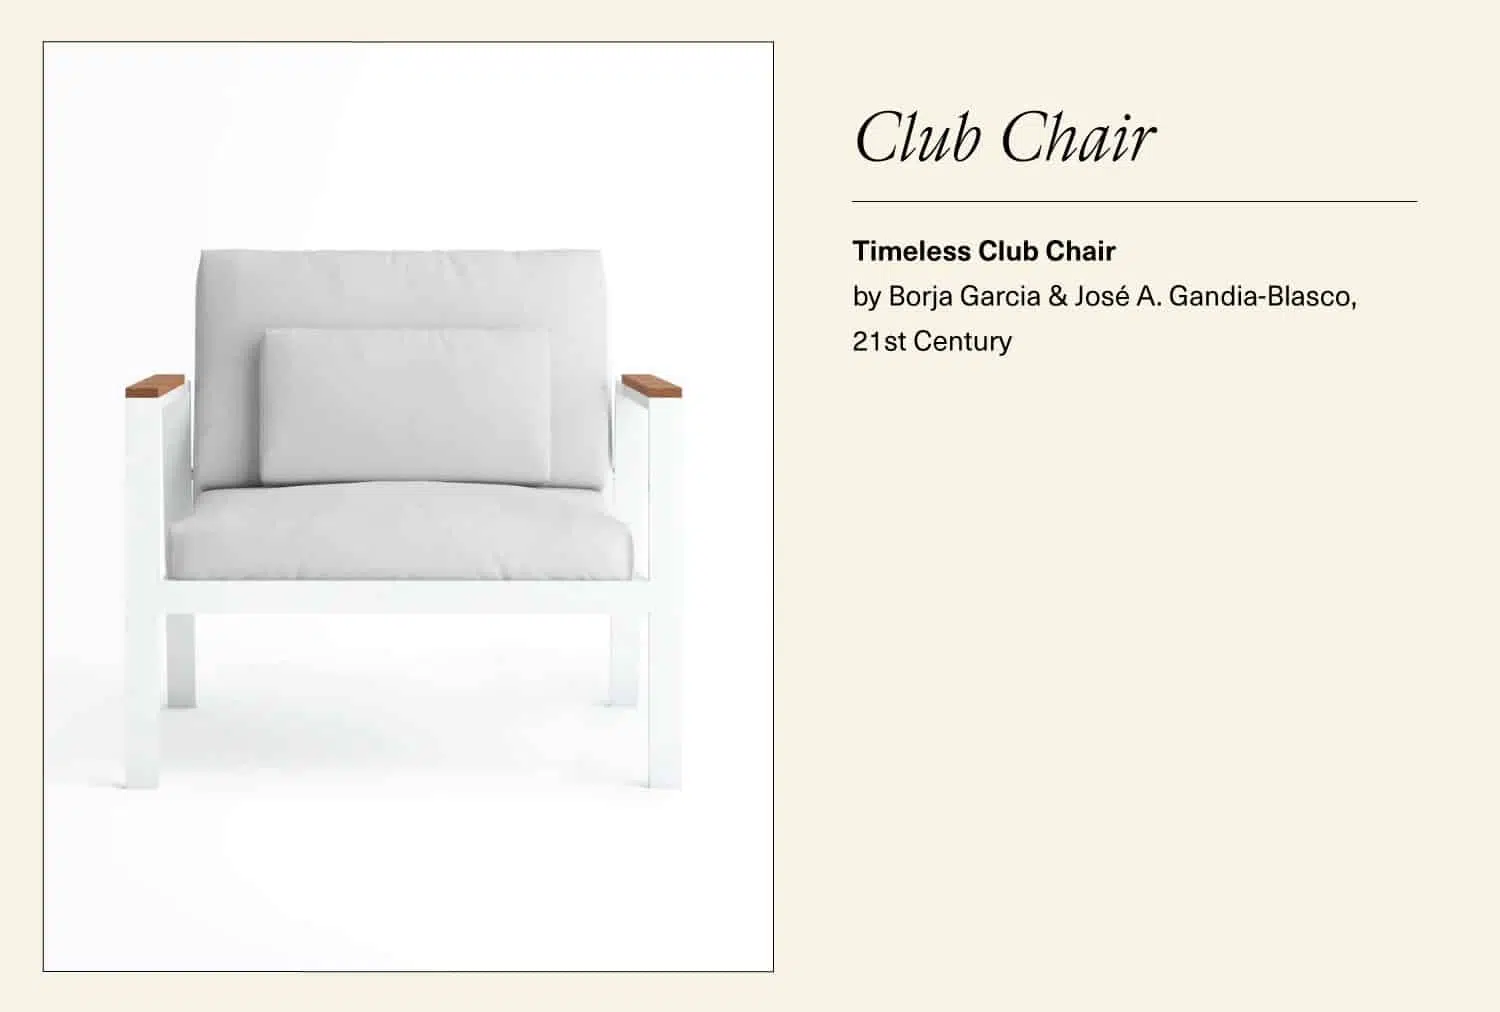 White timeless club chair